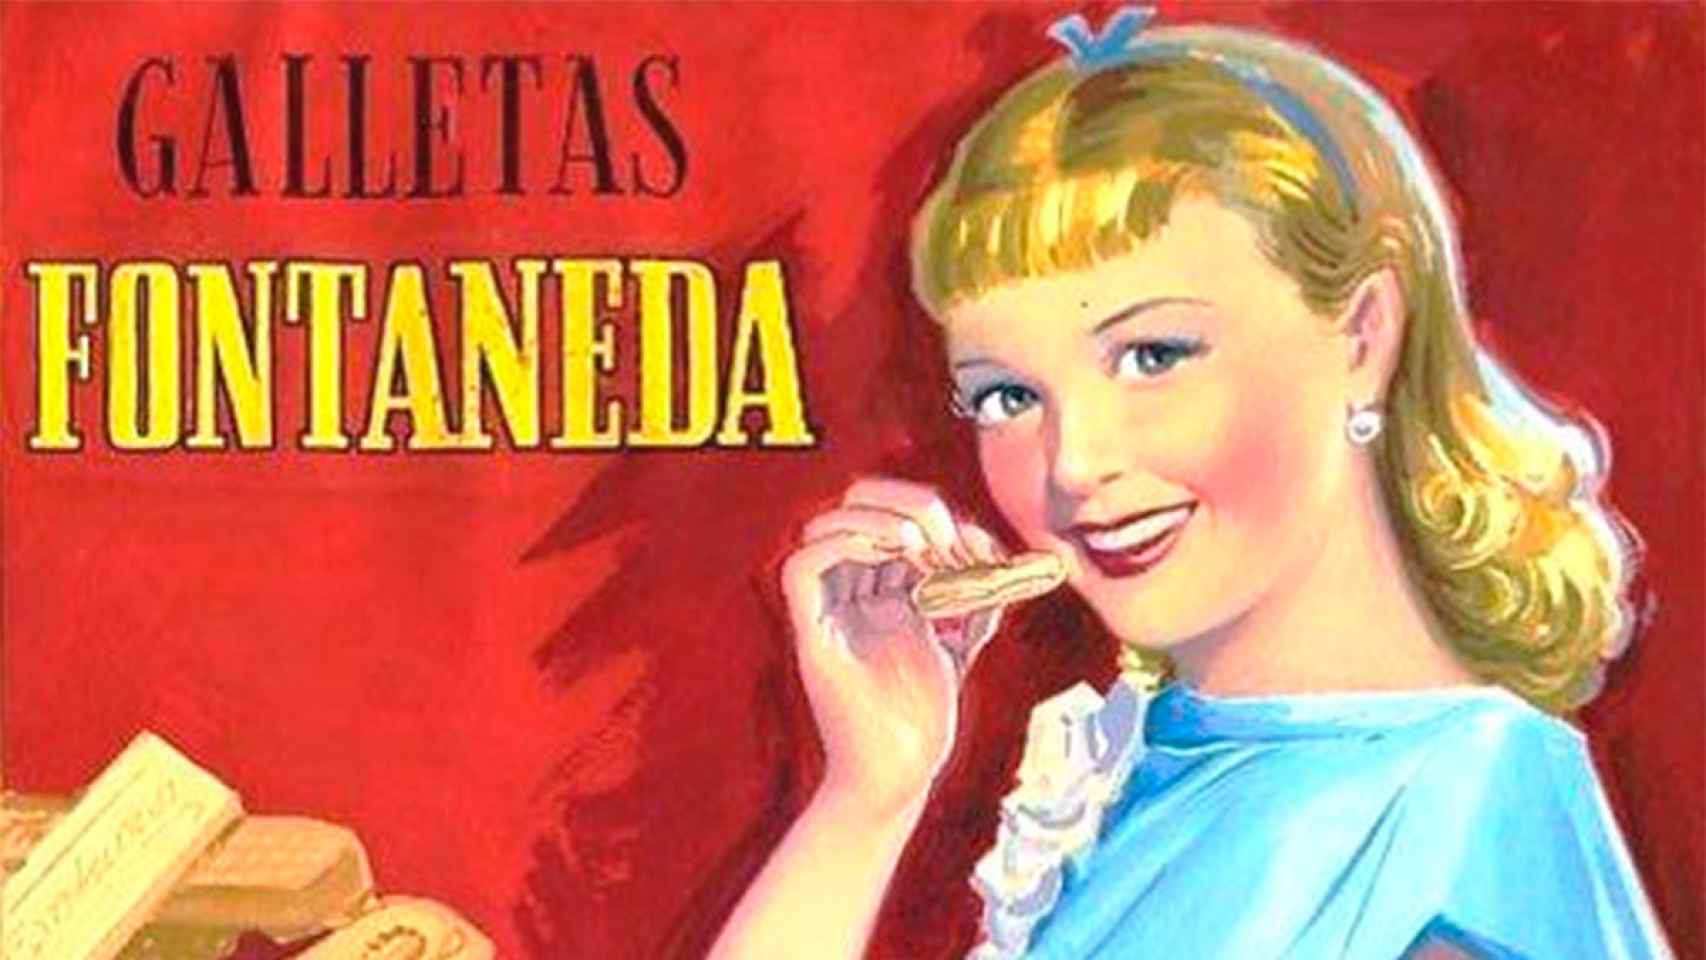 Imagen de una publicidad antigua de Galletas Fontaneda.